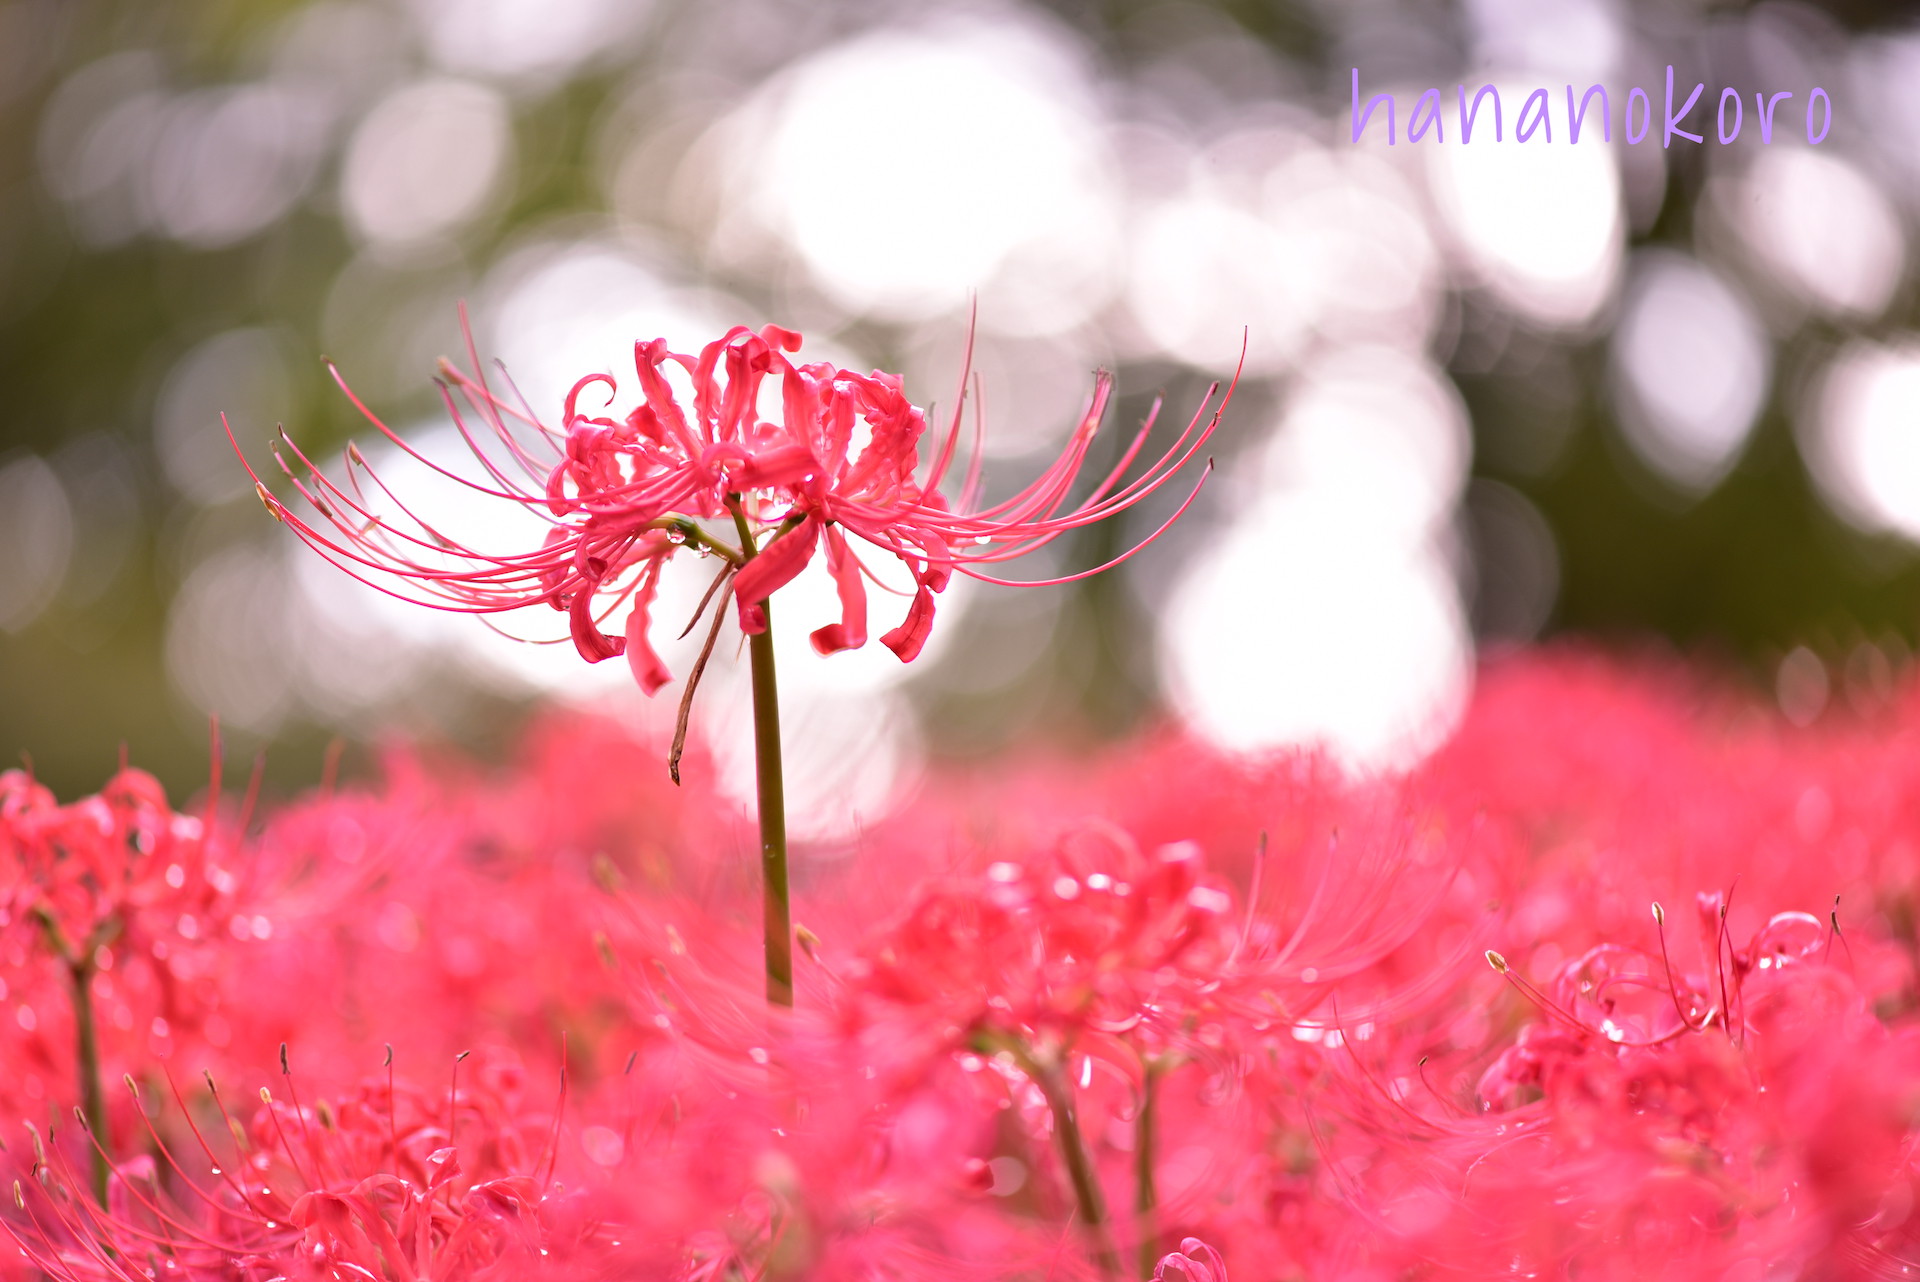 花言葉フォトギャラリー11 ヒガンバナ Red Spider Lily 障がい者が描く花イラストの雑貨販売 Hananokoro はなのころ